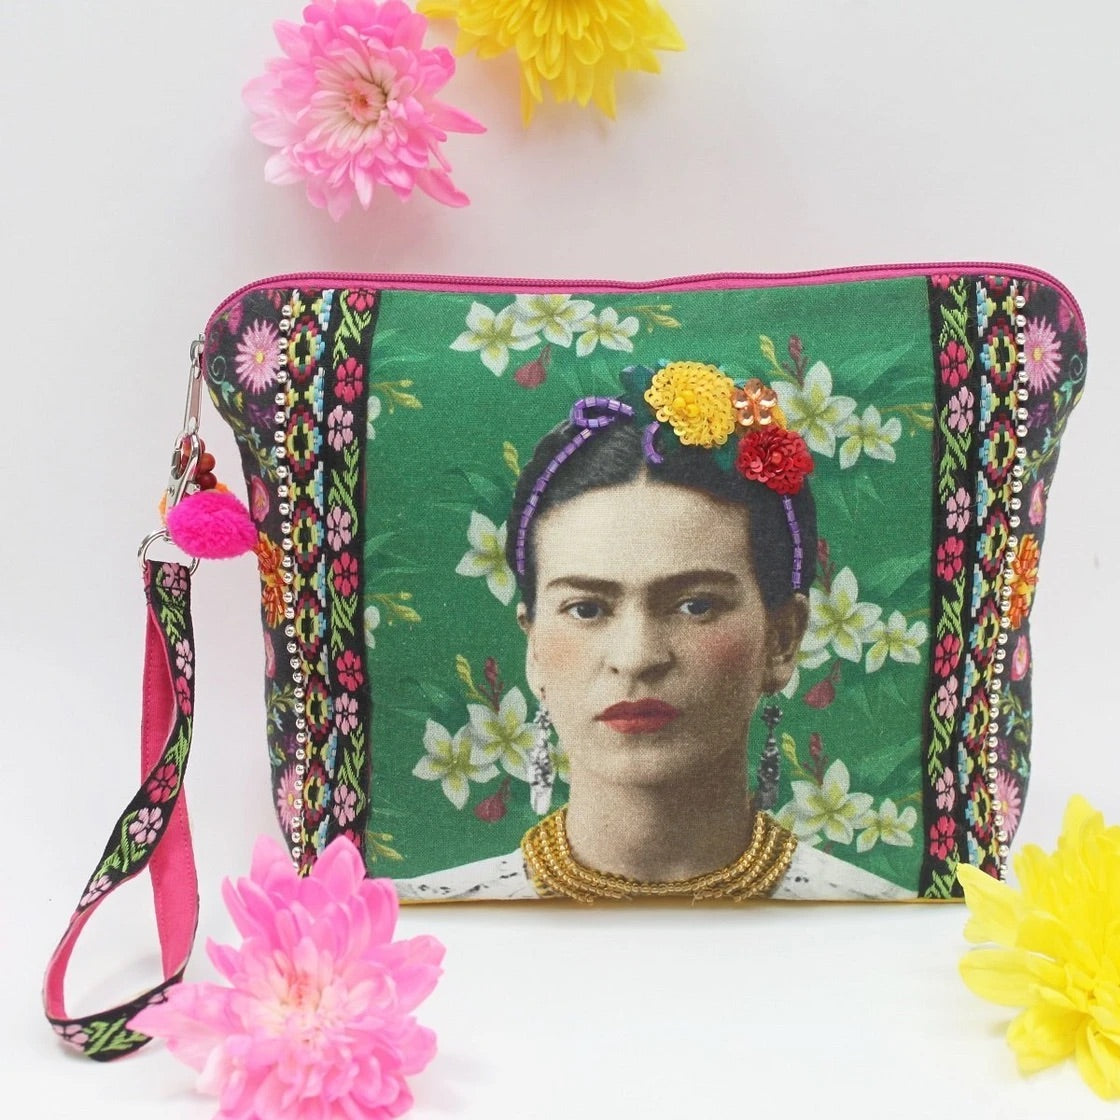 Frida Kahol Make-up Bag